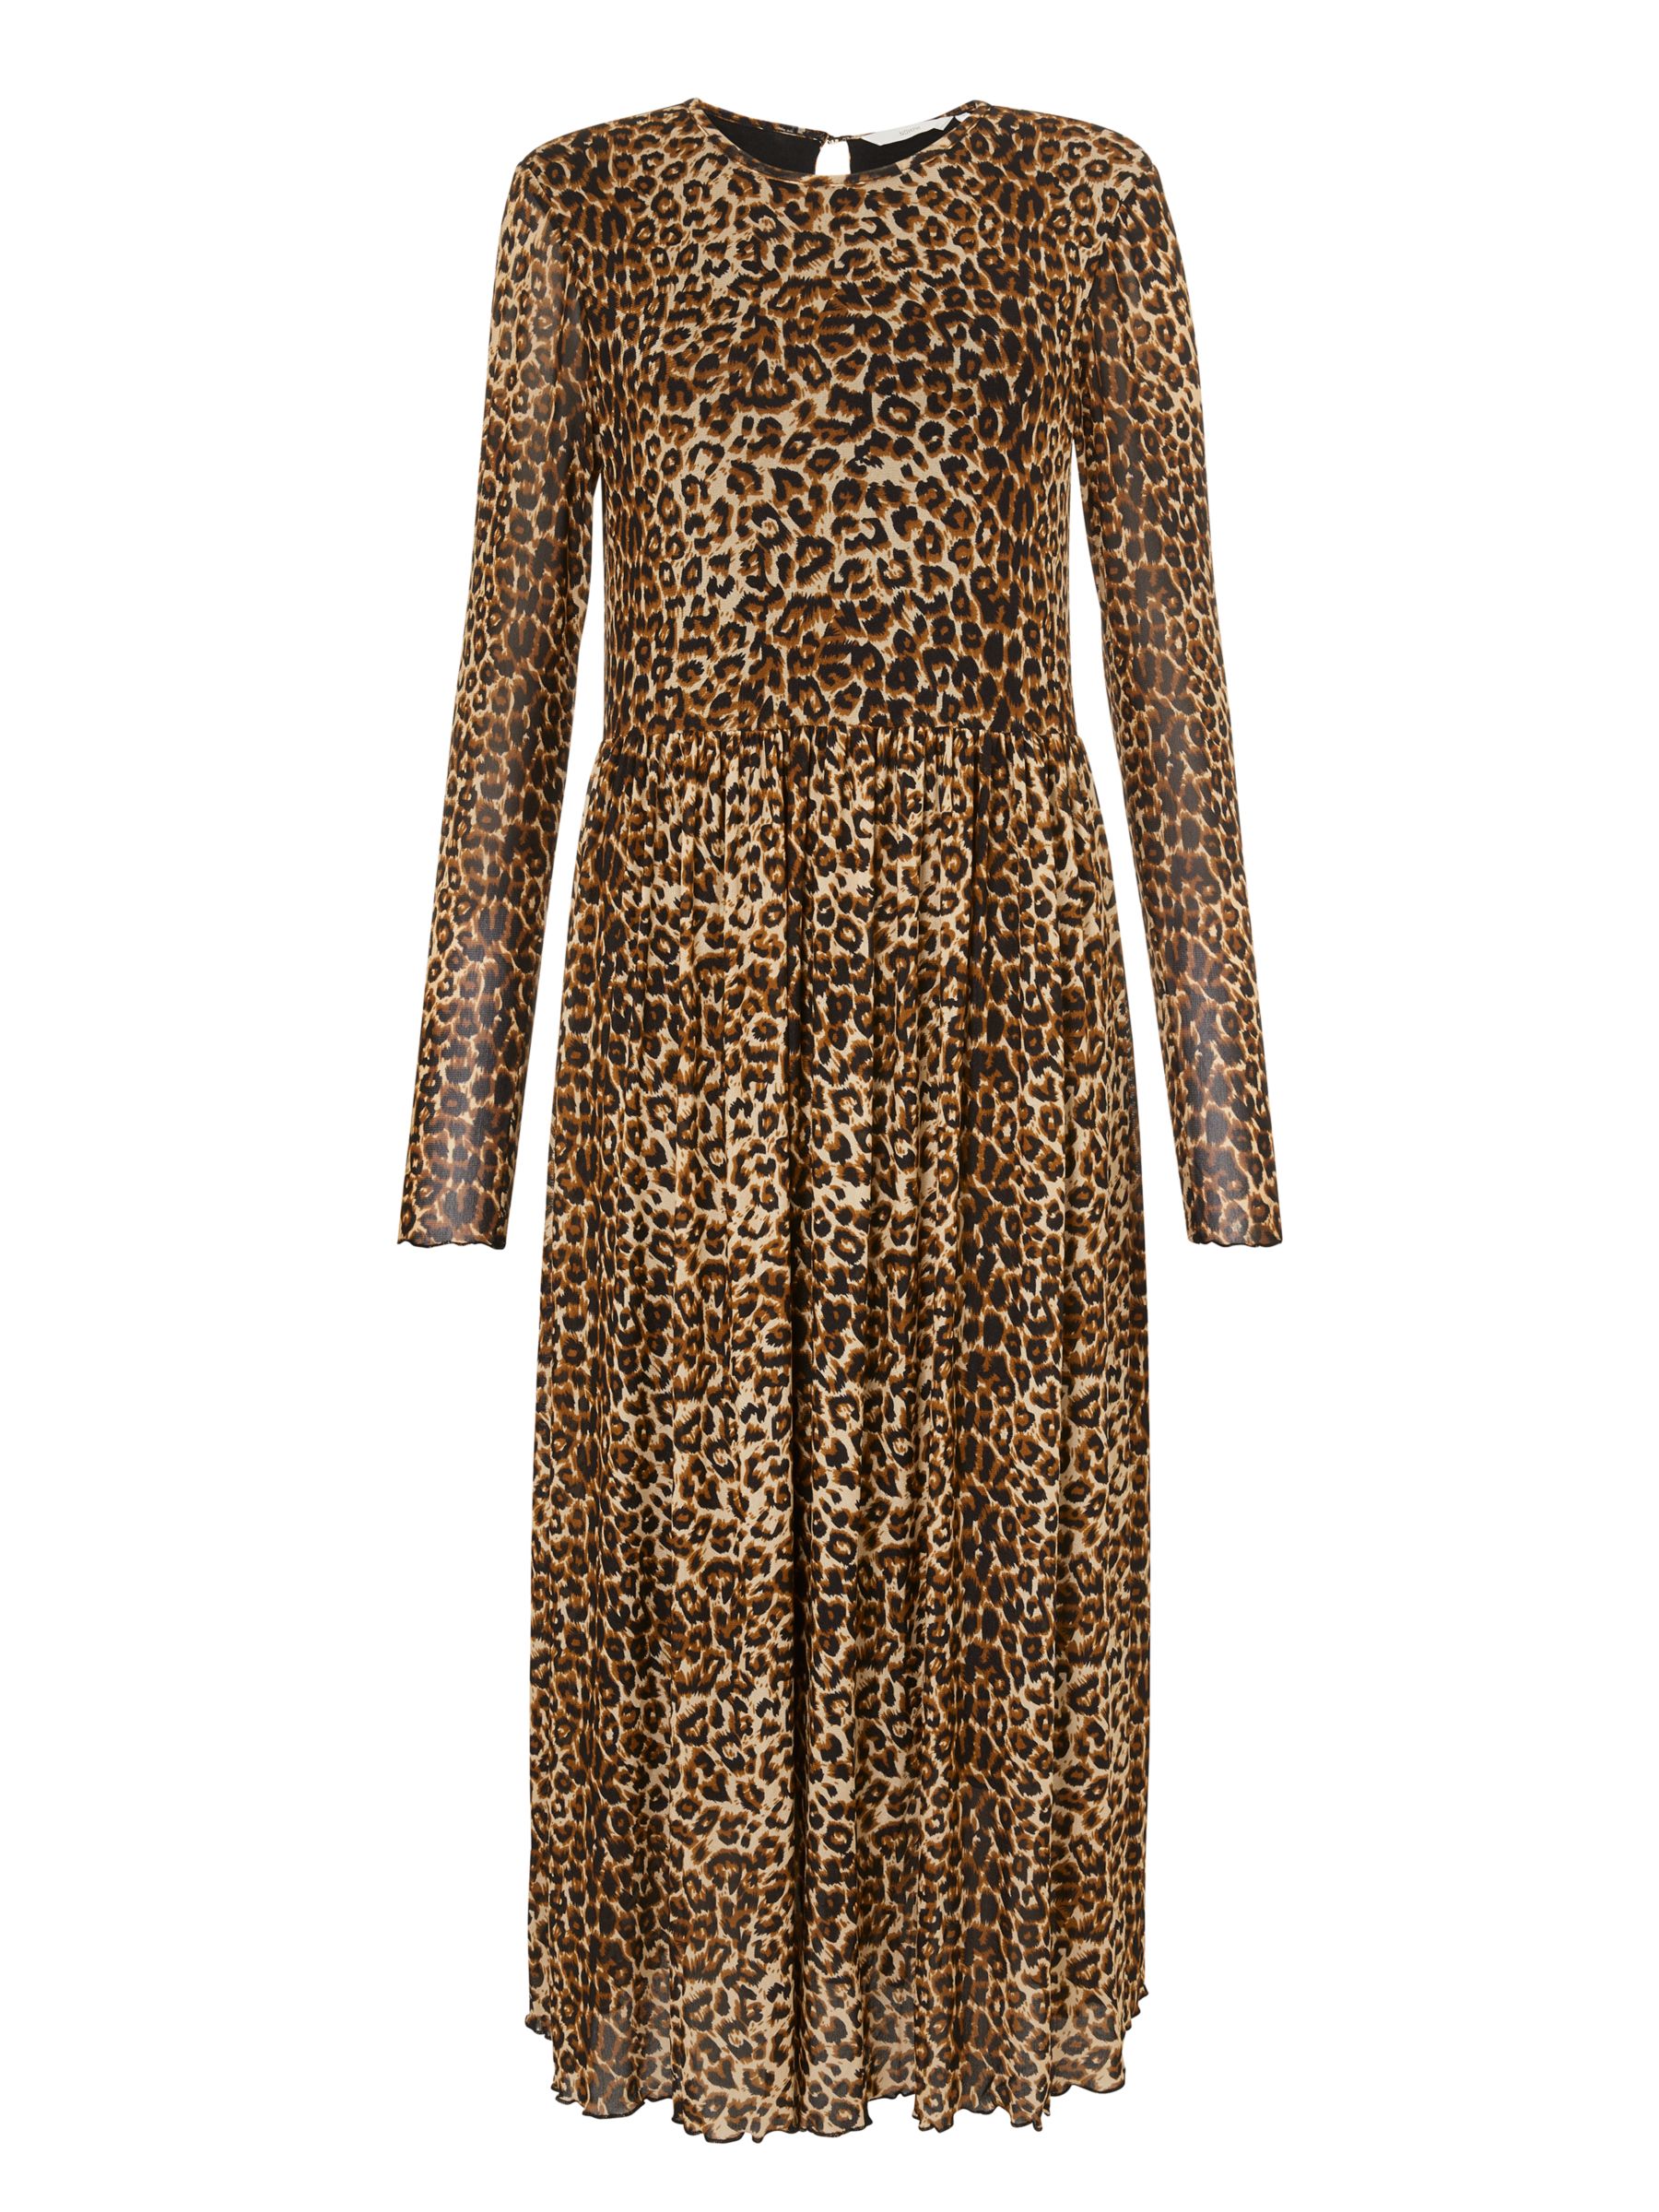 Numph Freja Leopard Print Smock Dress, Bread at John Lewis & Partners